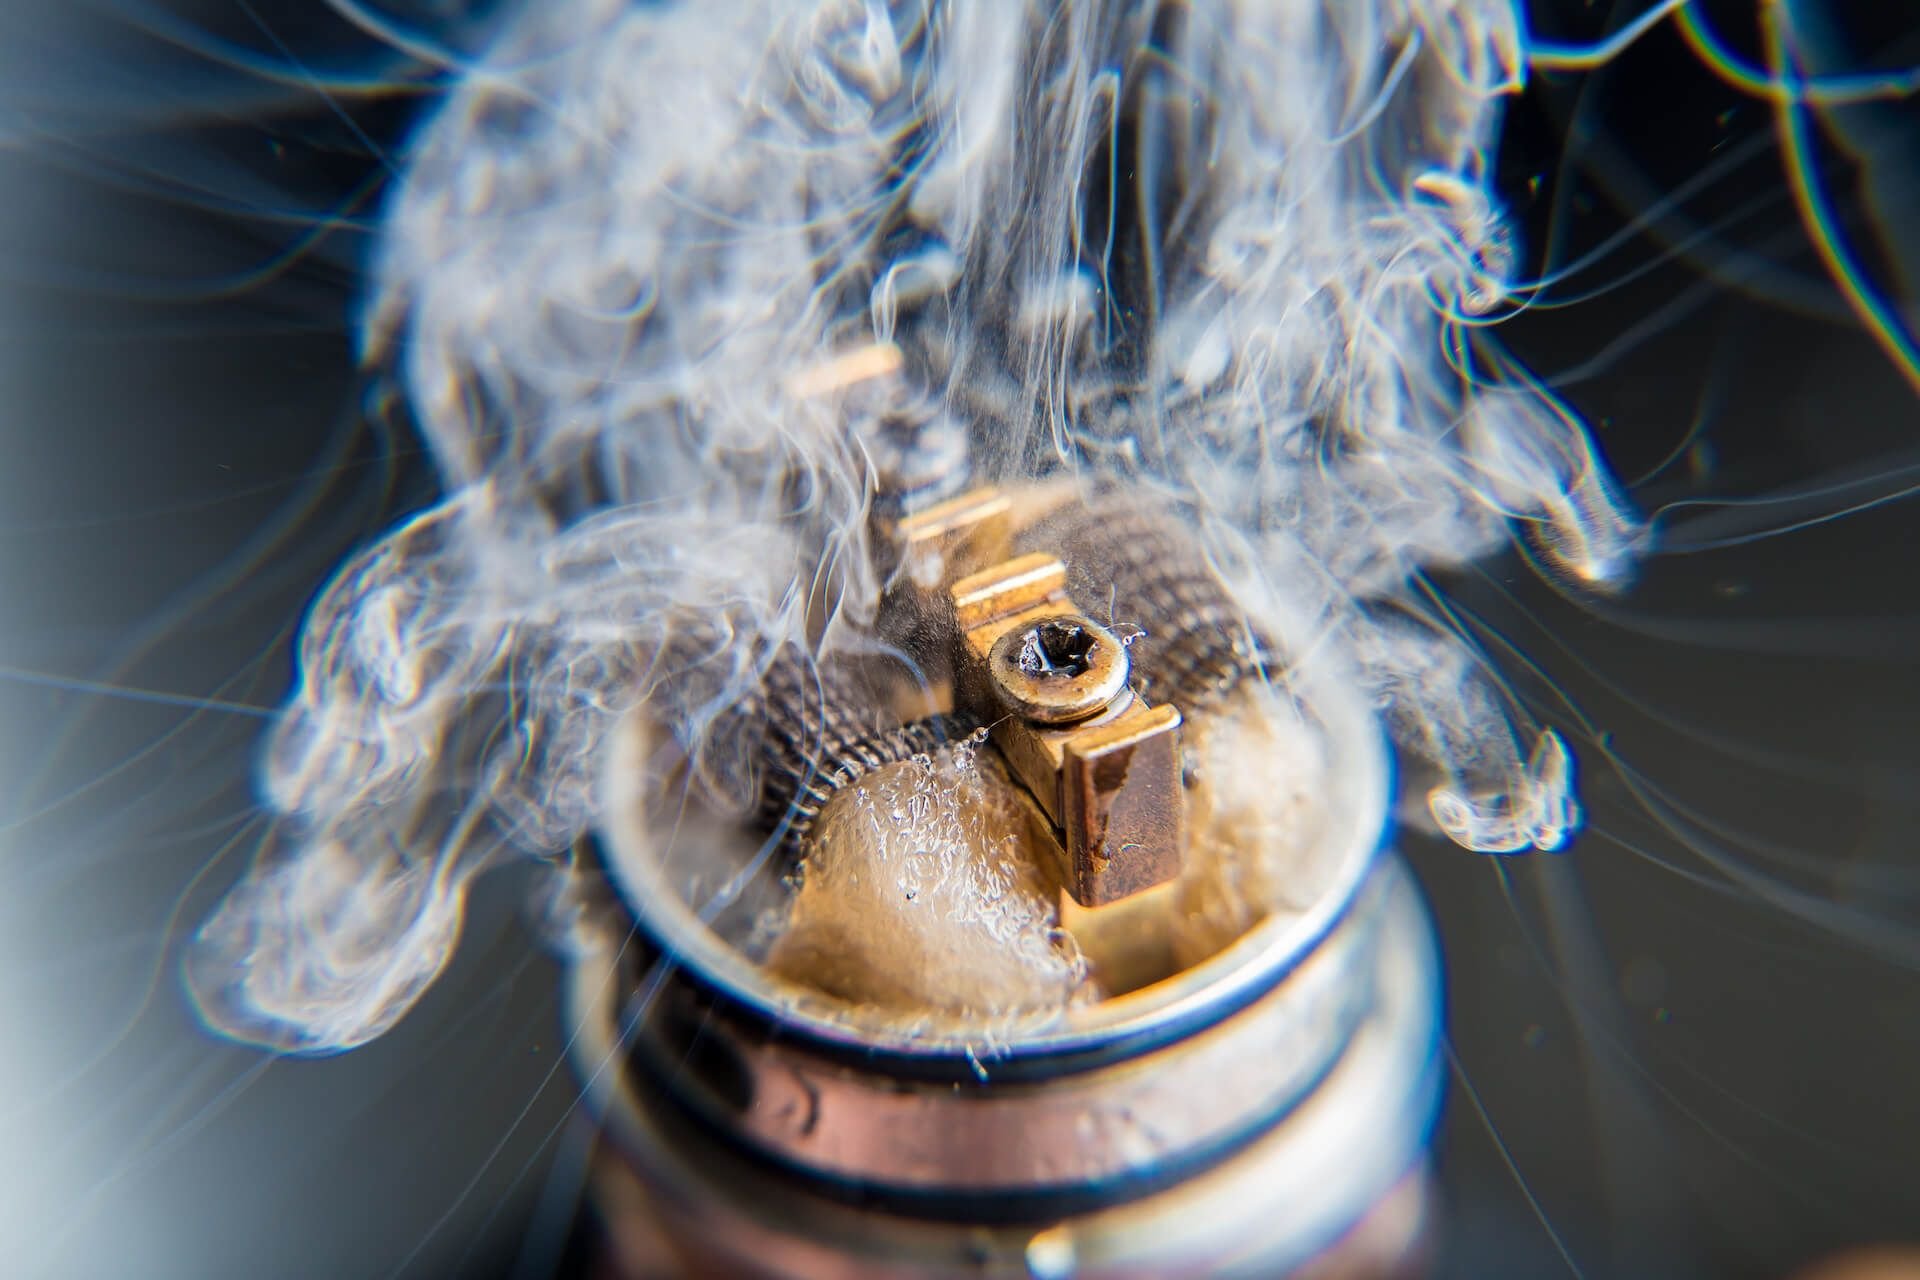 Vaporizer and coil with vape cloud - close up